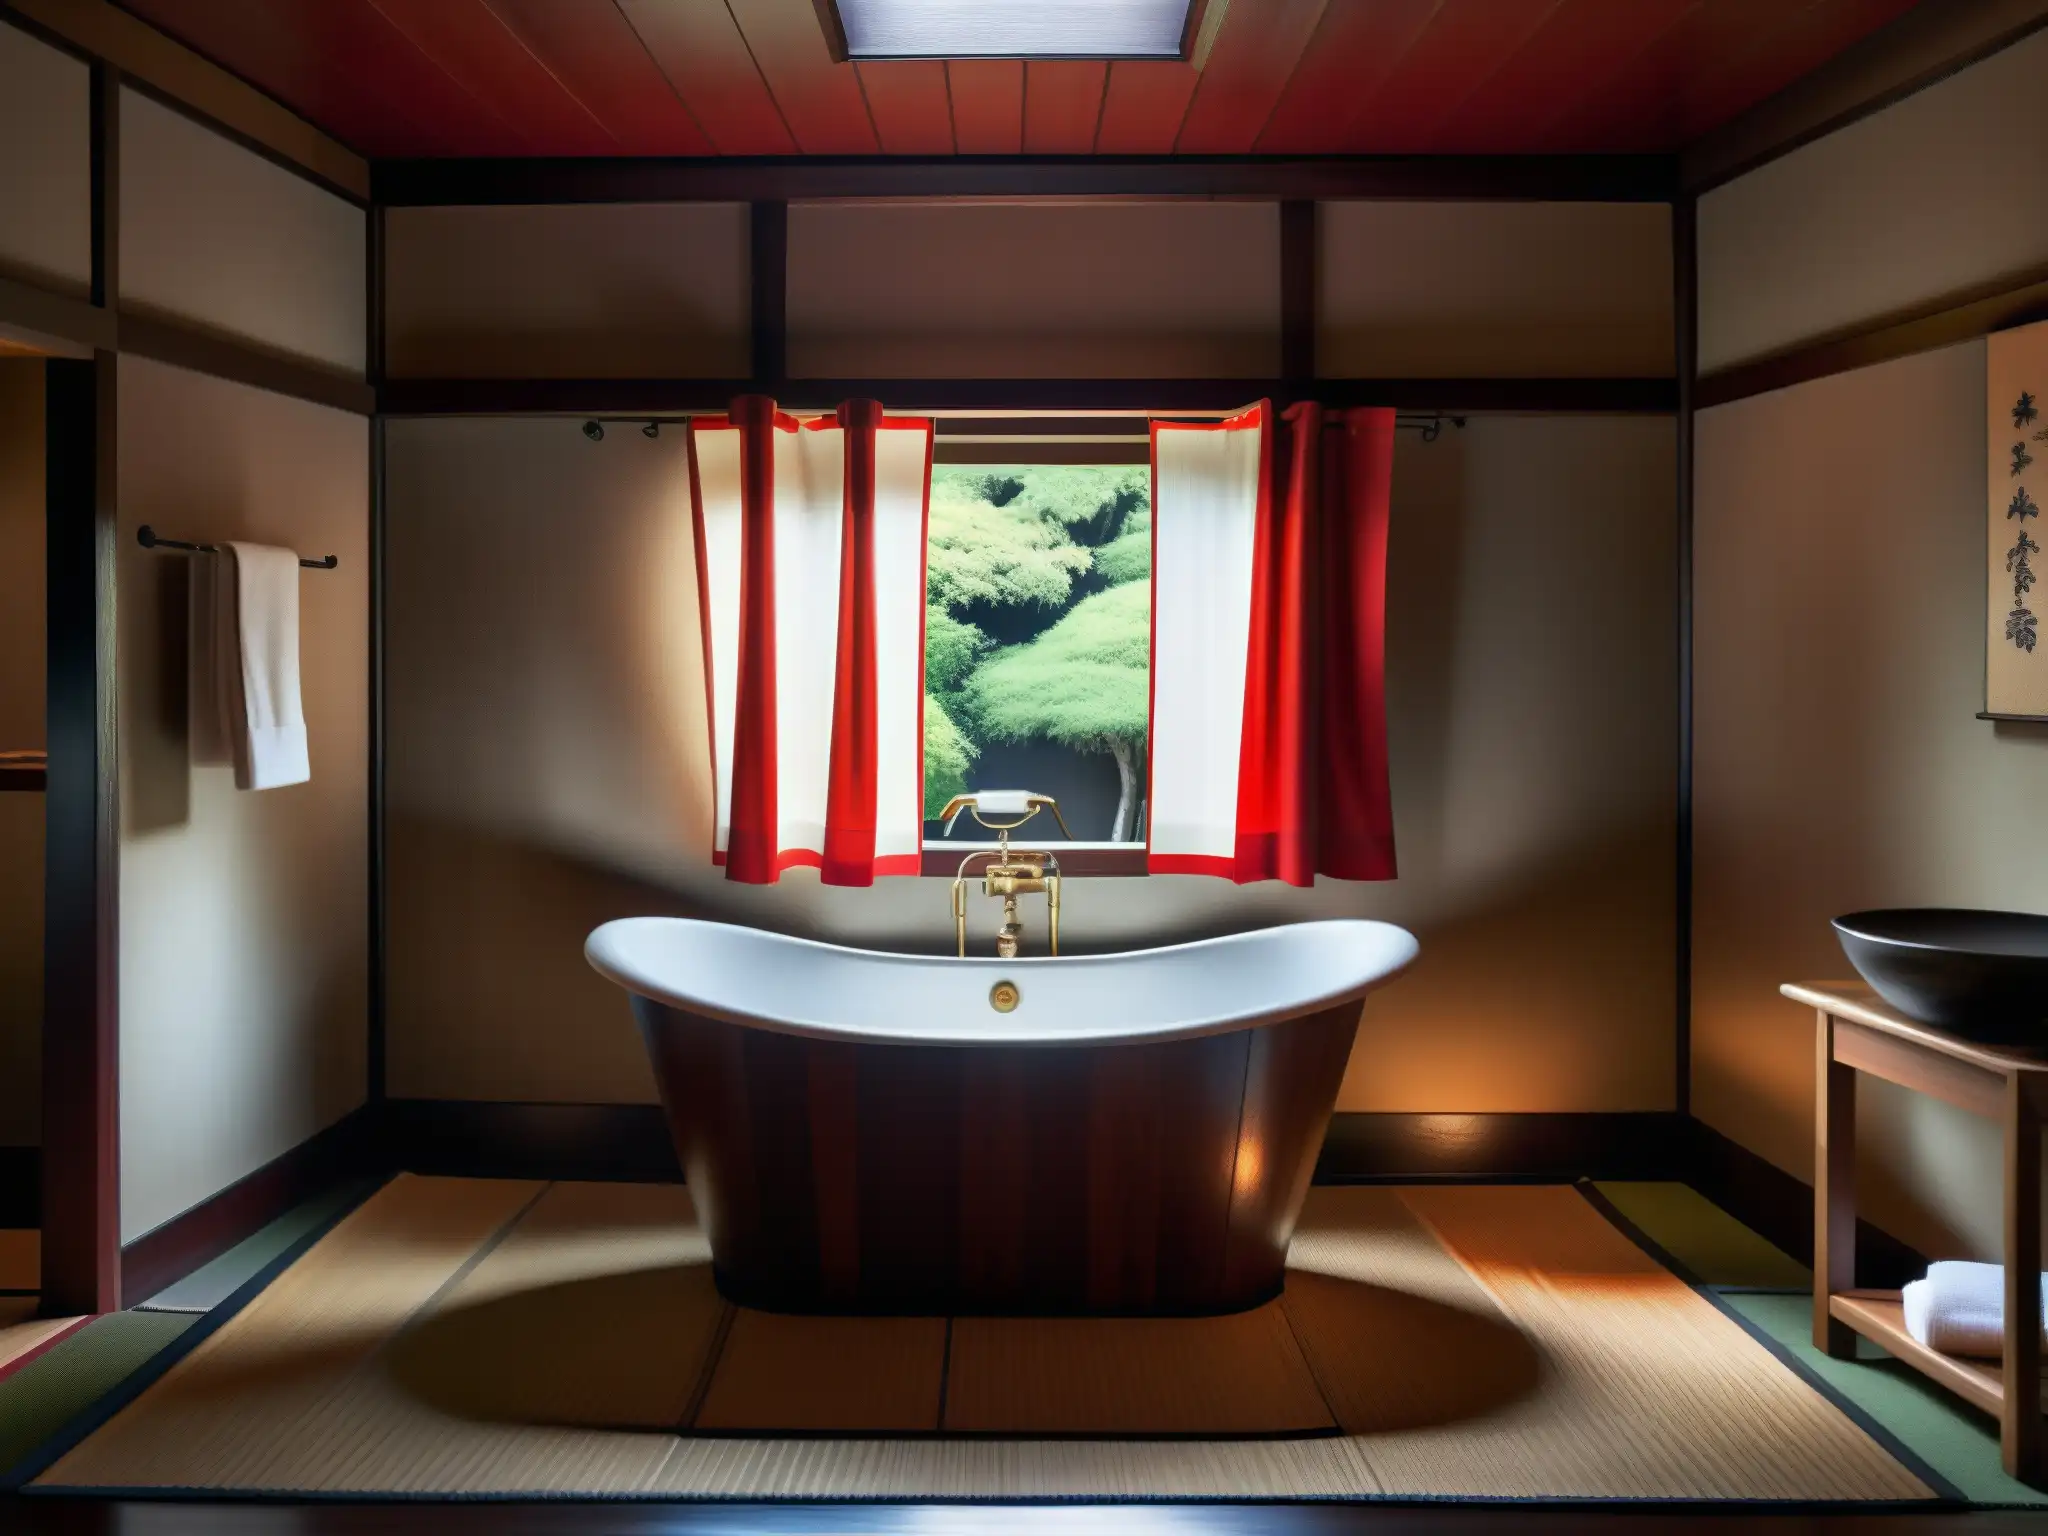 Un baño japonés tradicional con una bañera de madera profunda